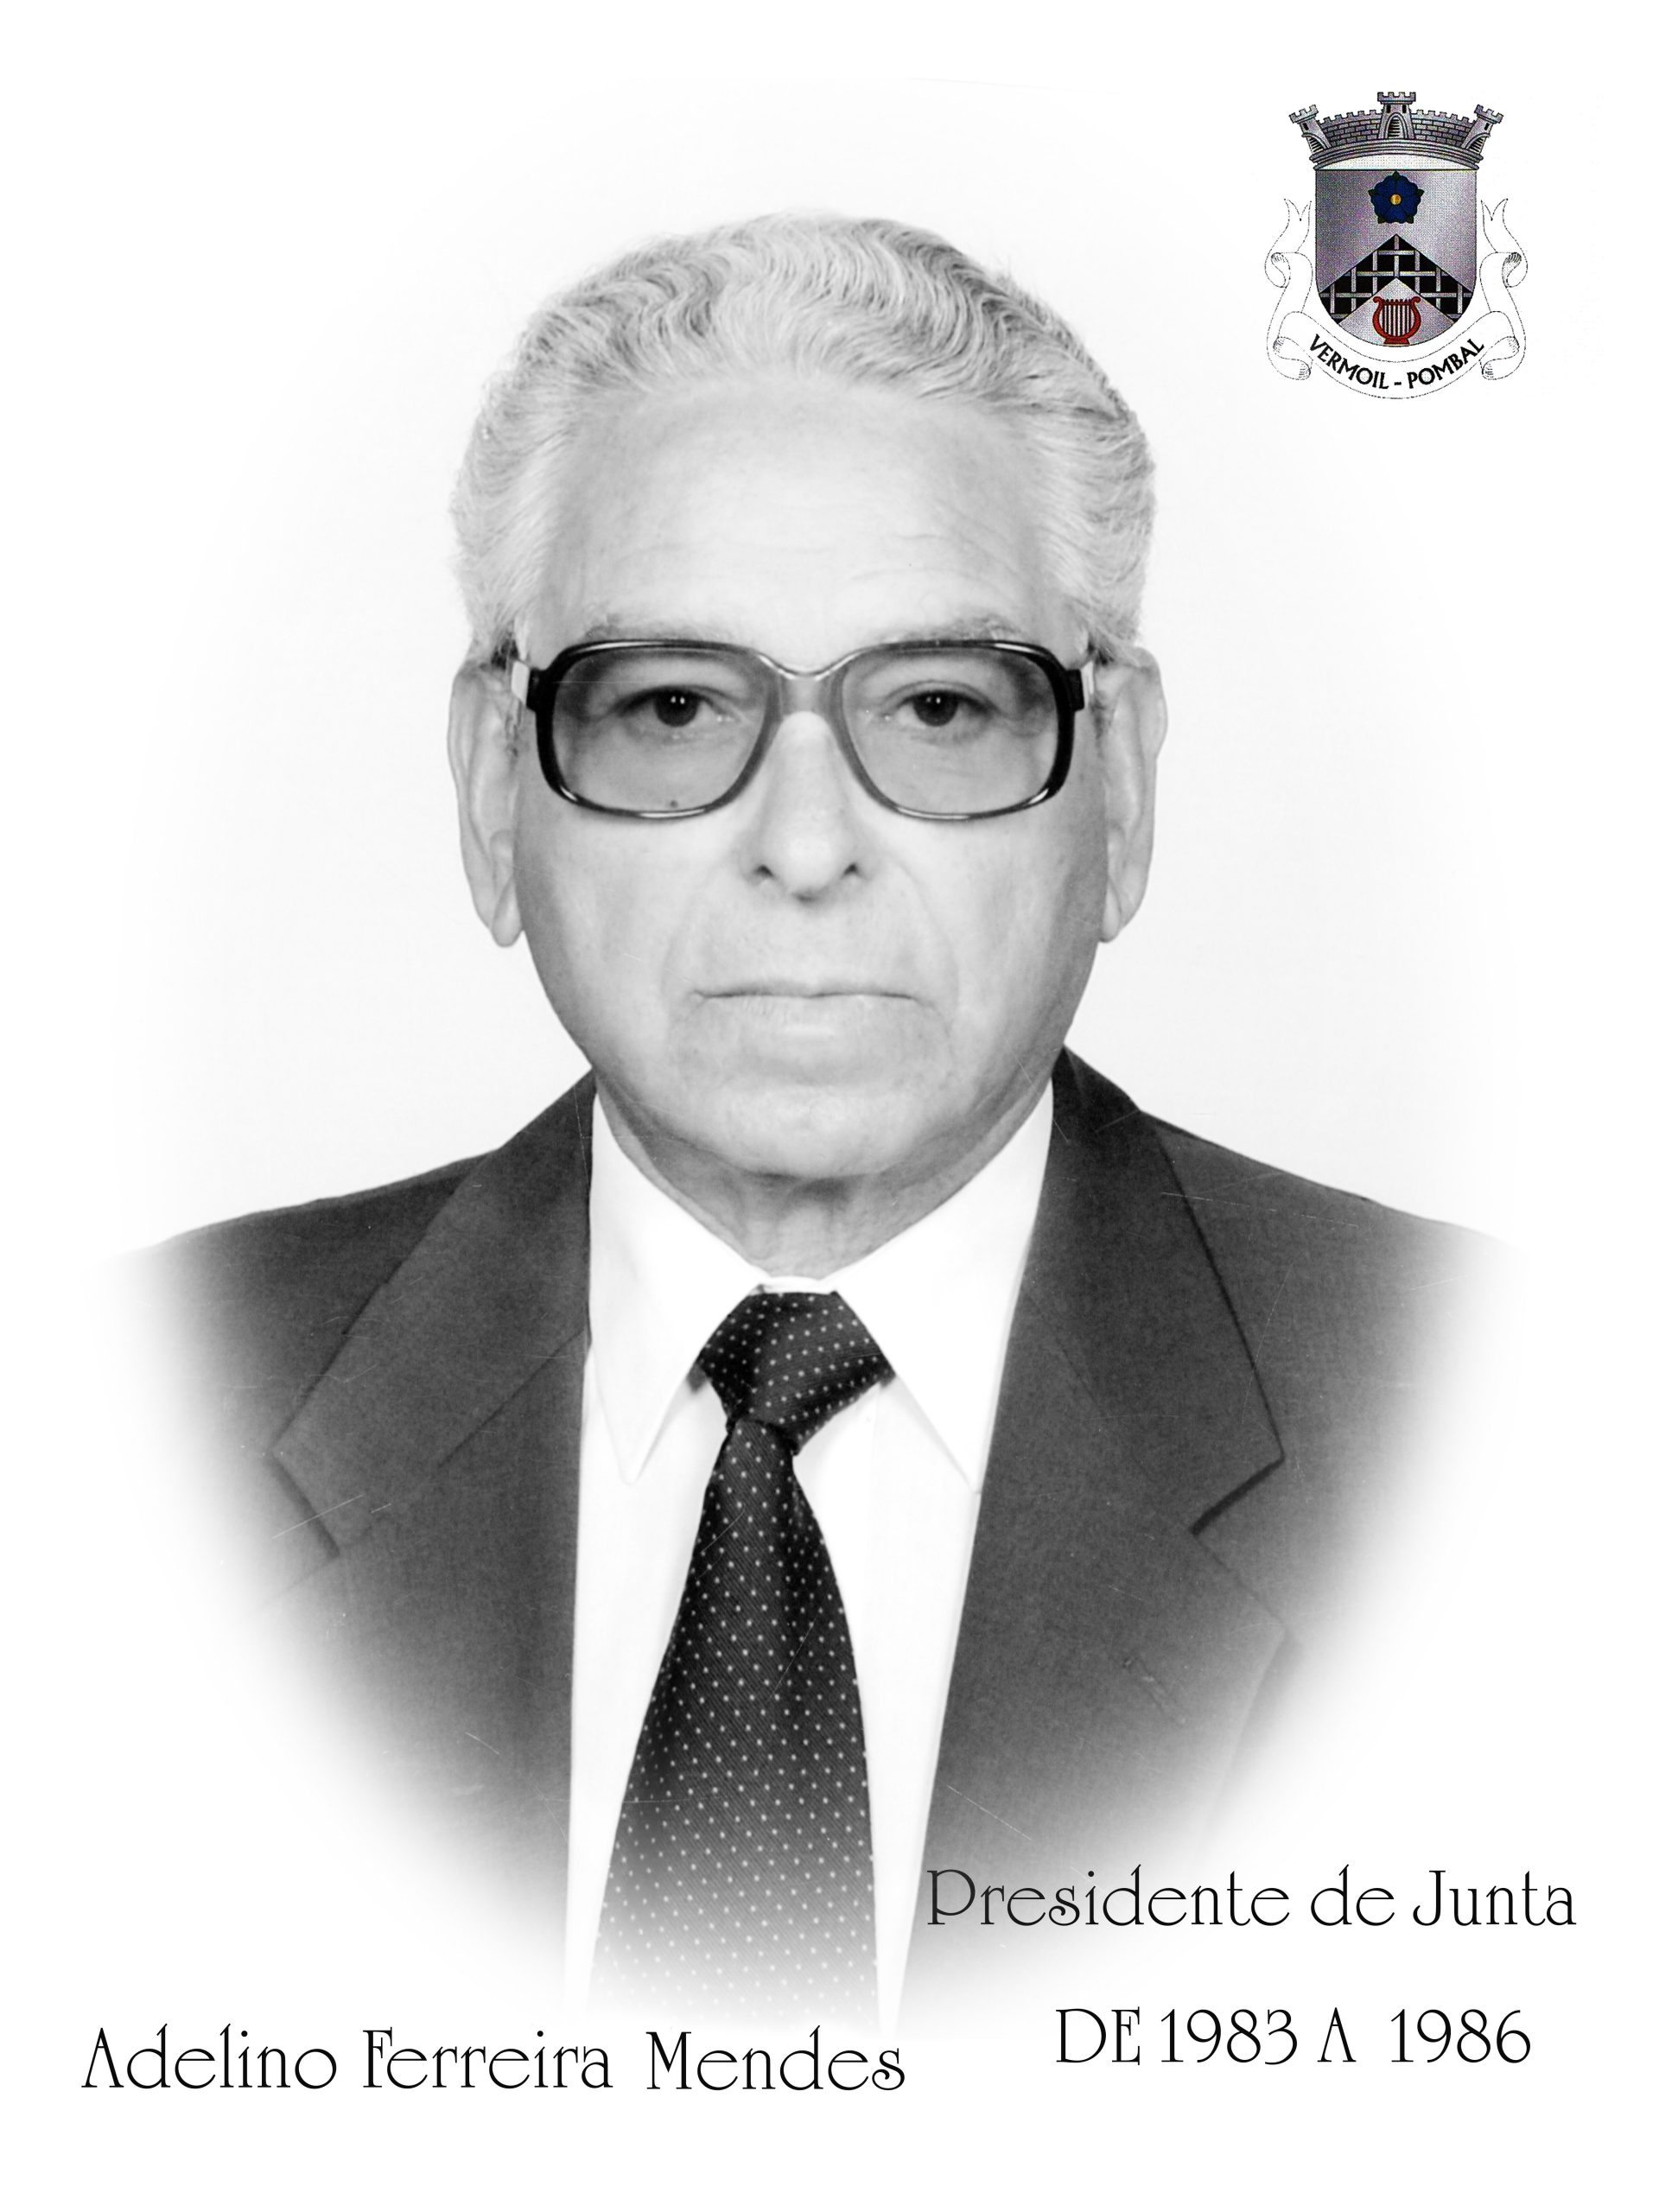 Adelino Ferreira Mendes - Mandato de 1983 a 1986